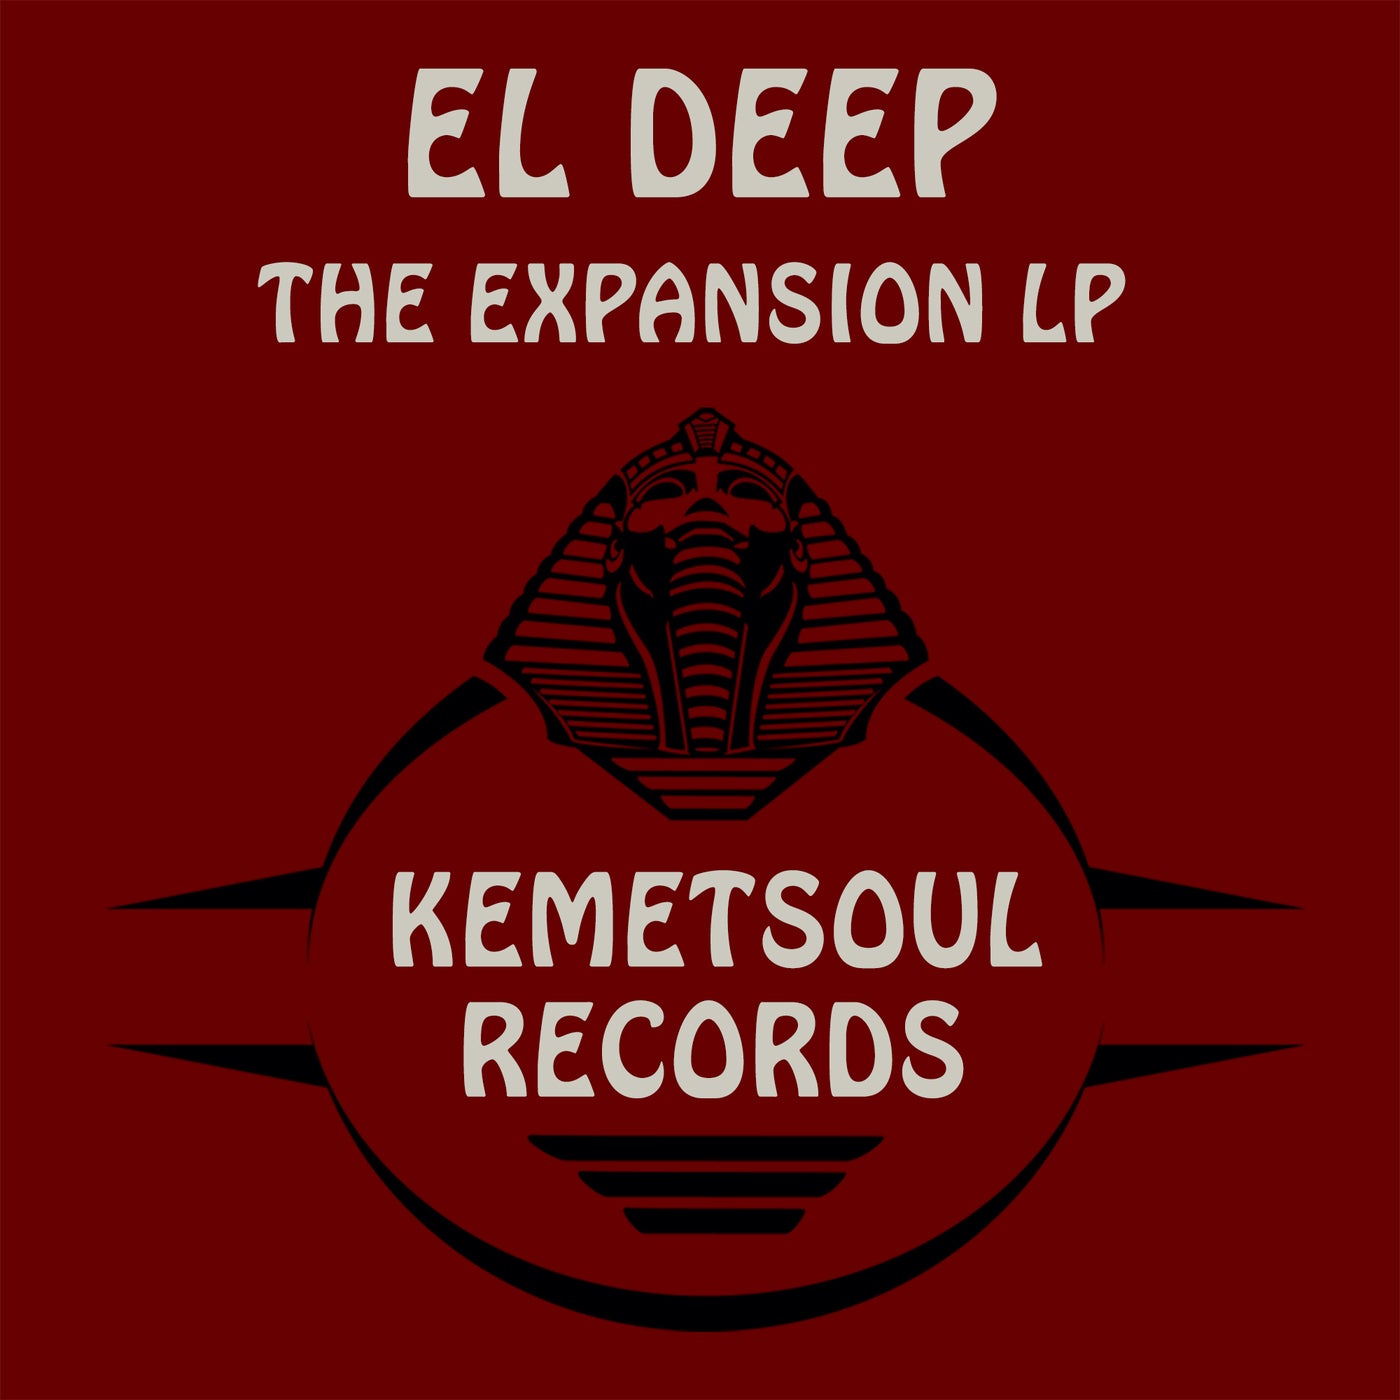 The Expansion LP